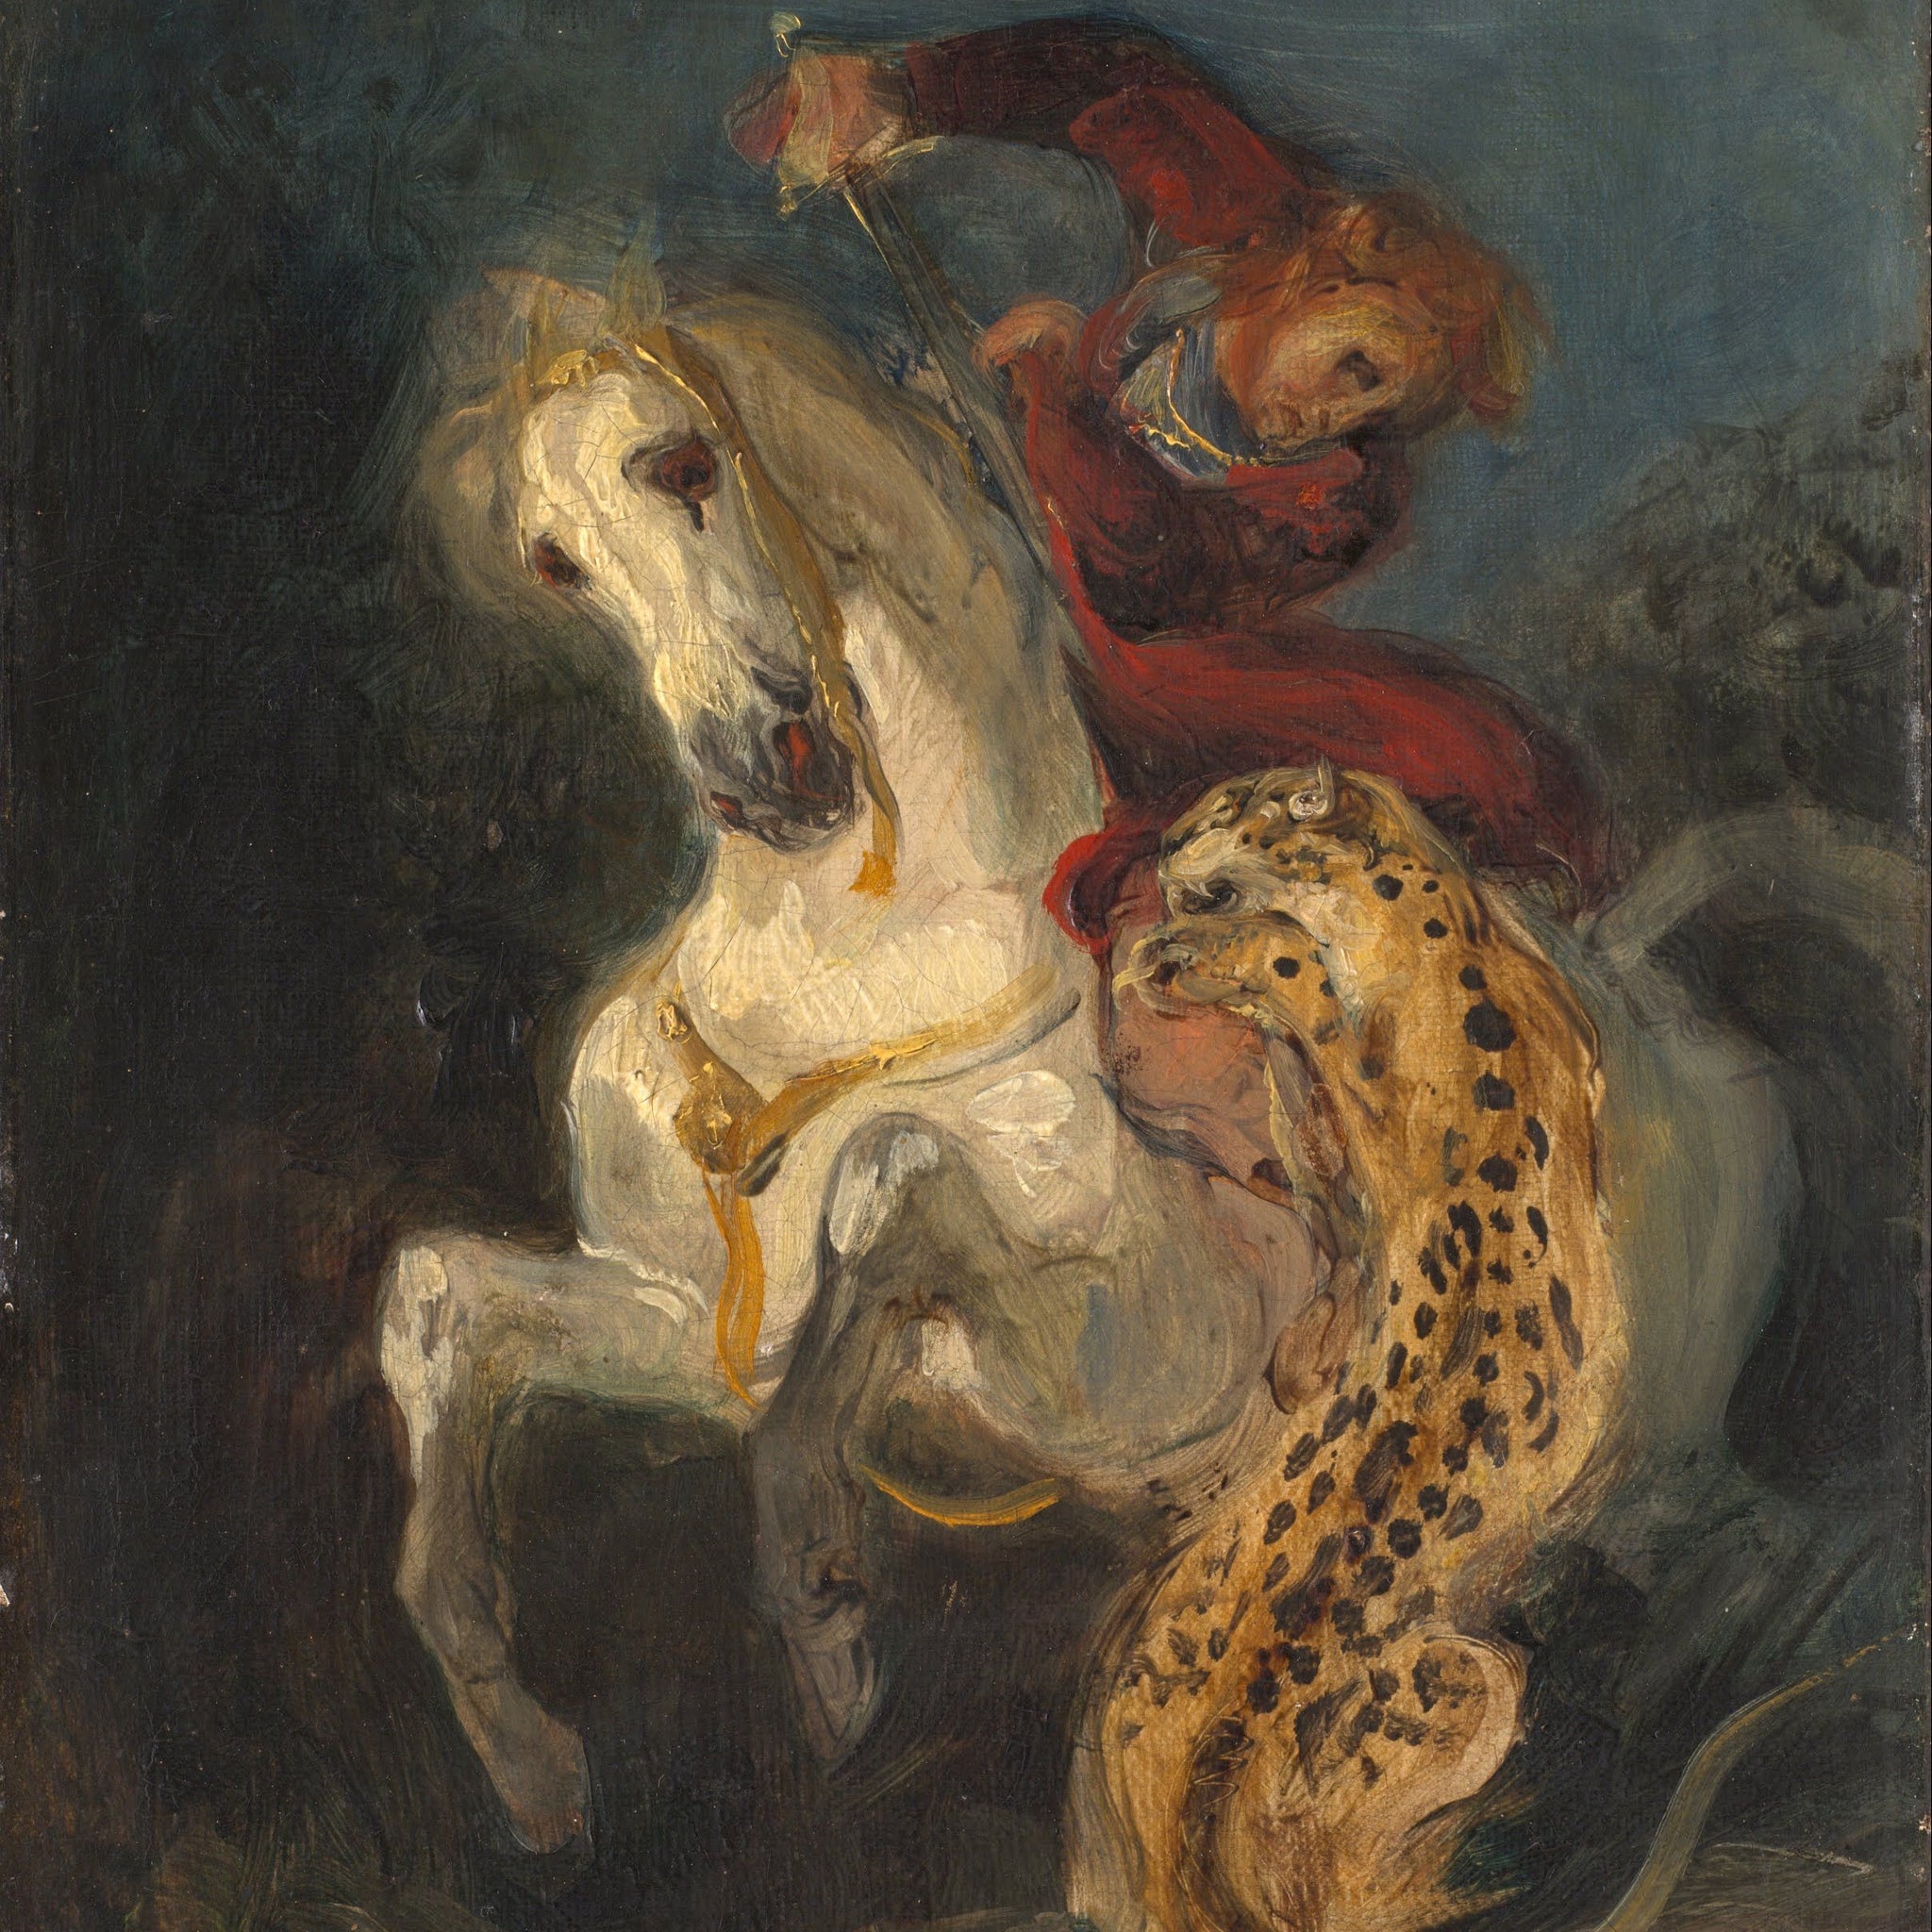 Un cavalier attaqué par un jaguar - Eugène Delacroix